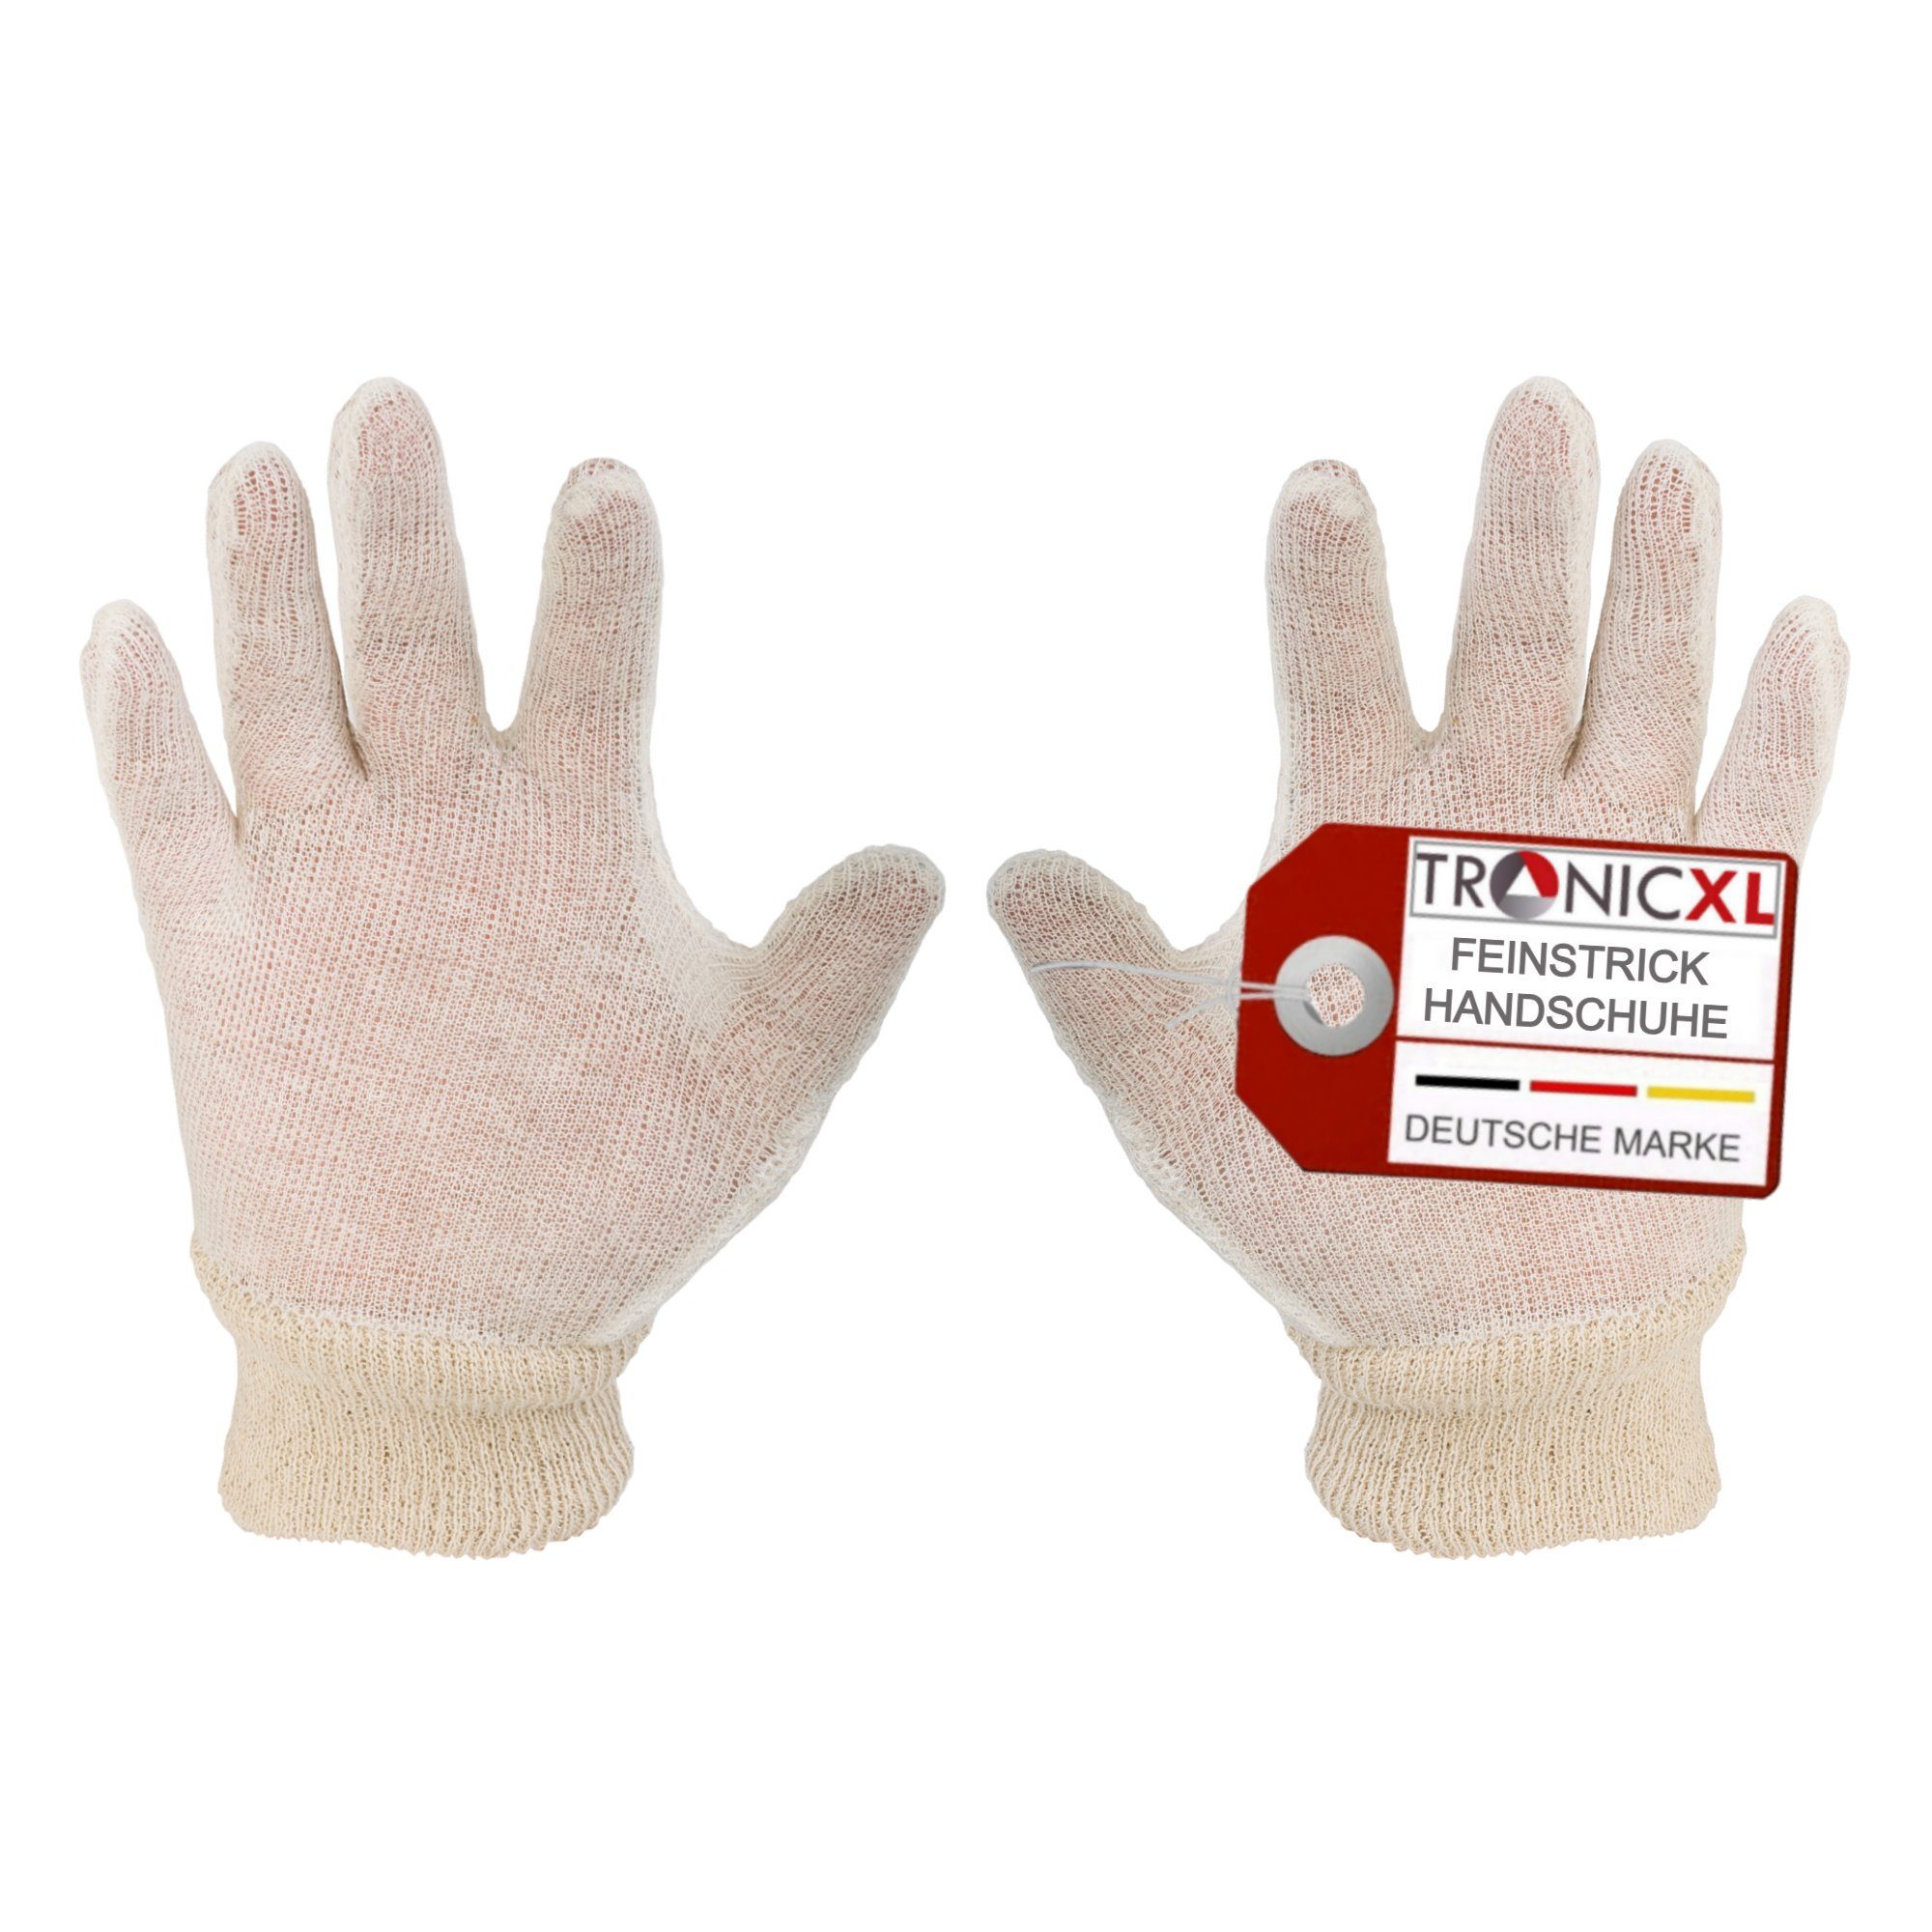 TronicXL Arbeitshandschuhe 24 Paar Strick Handschuhe dünn Stoffhandschuhe Feinstrickhandschuhe